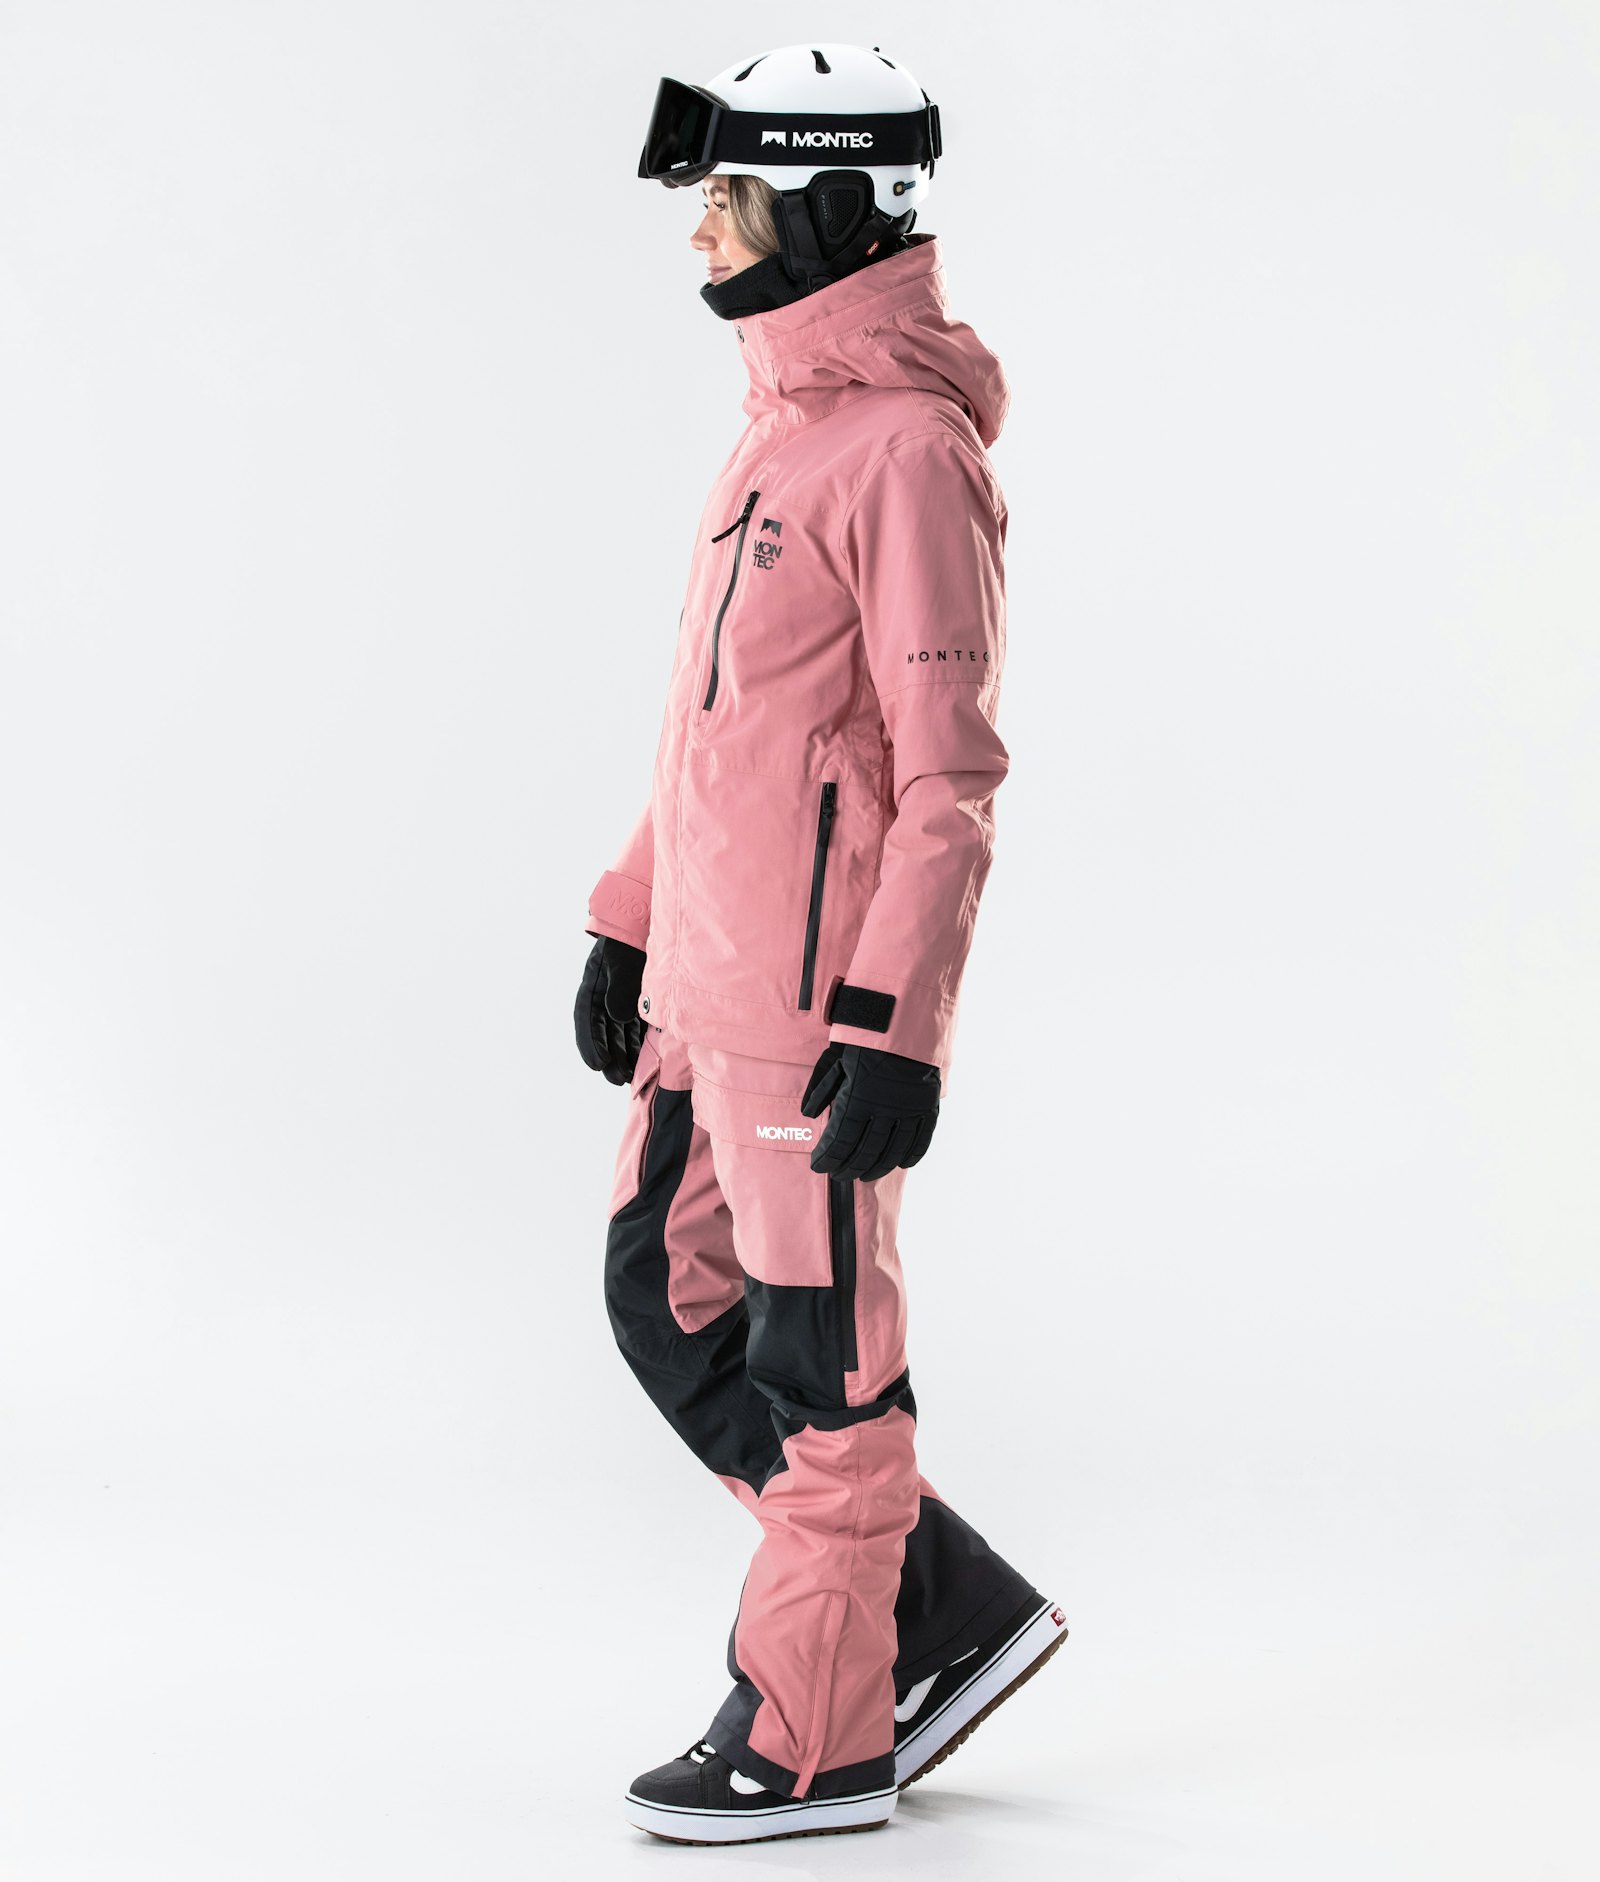 Fawk W 2020 Snowboard Jacket Women Pink Renewed